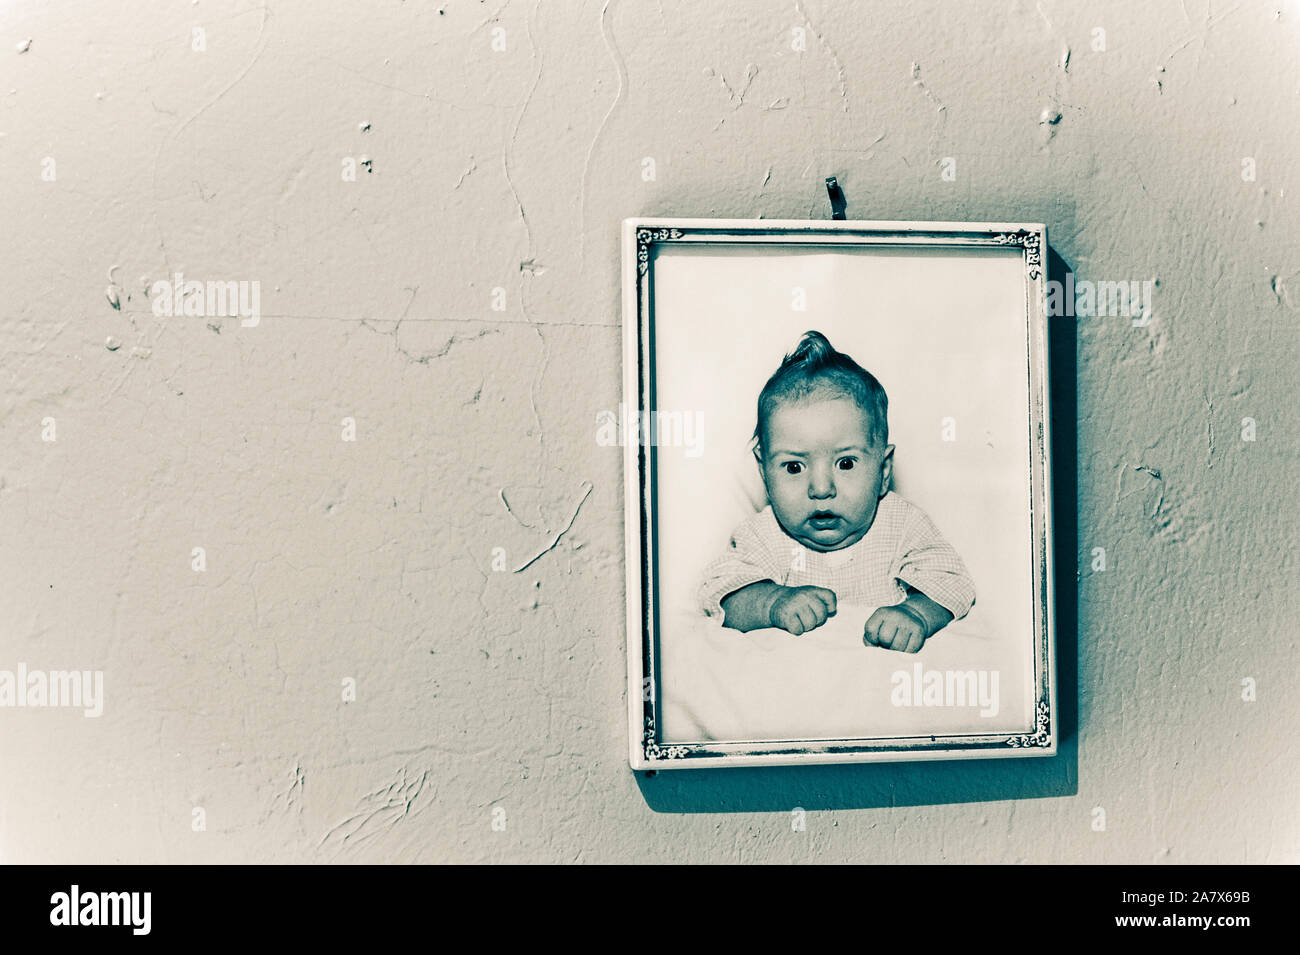 Immagine del bambino incorniciata dalla 1950s appesa alla parete. Foto Stock